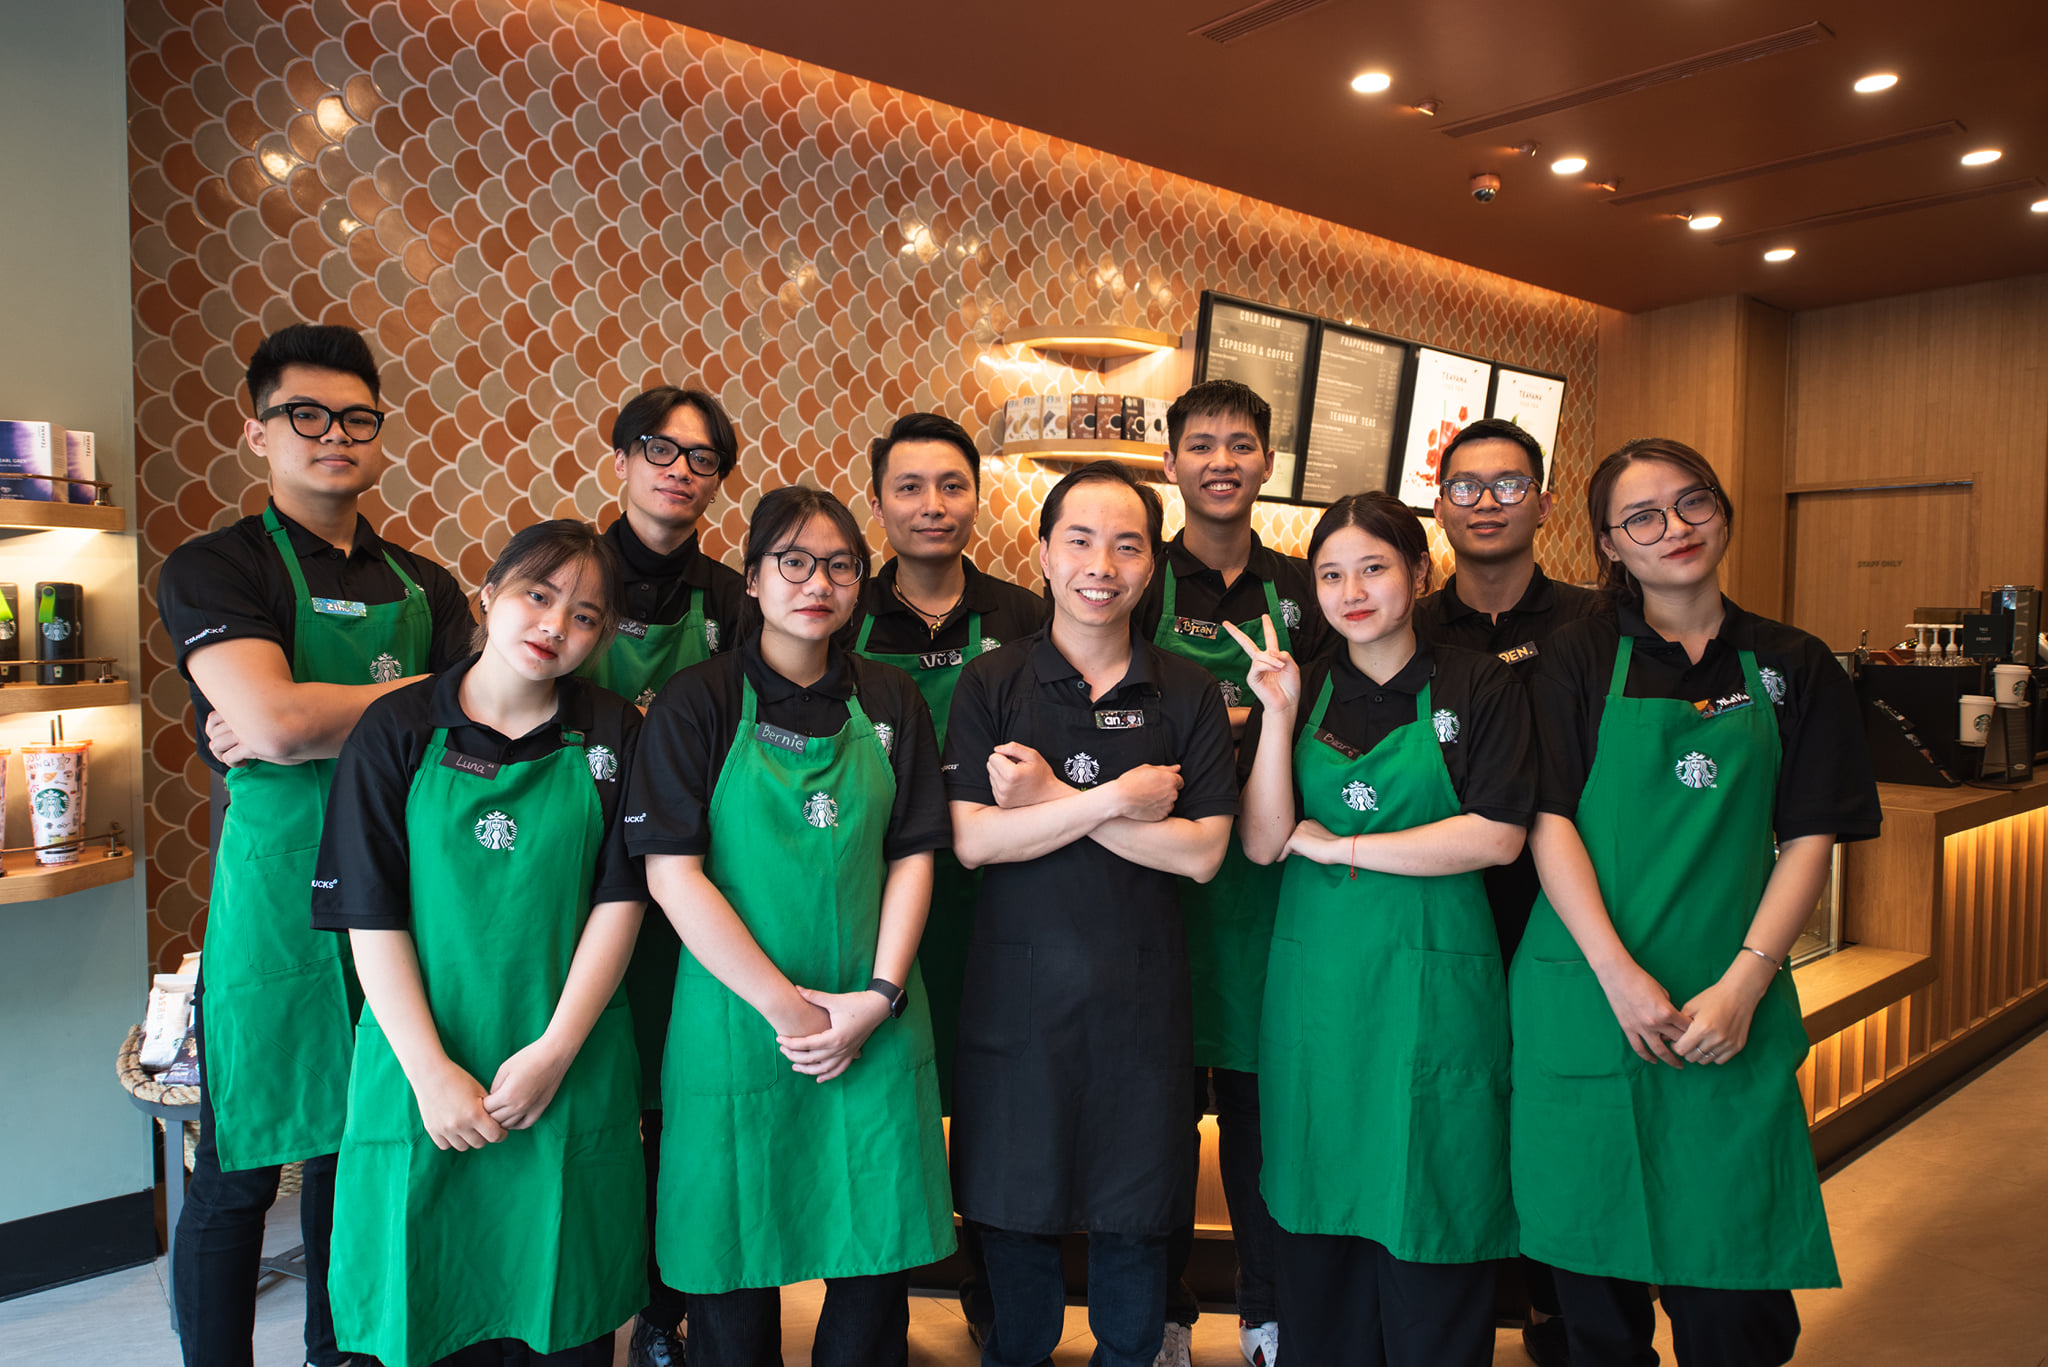 Dong phuc Starbucks09 - Đồng phục Starbucks